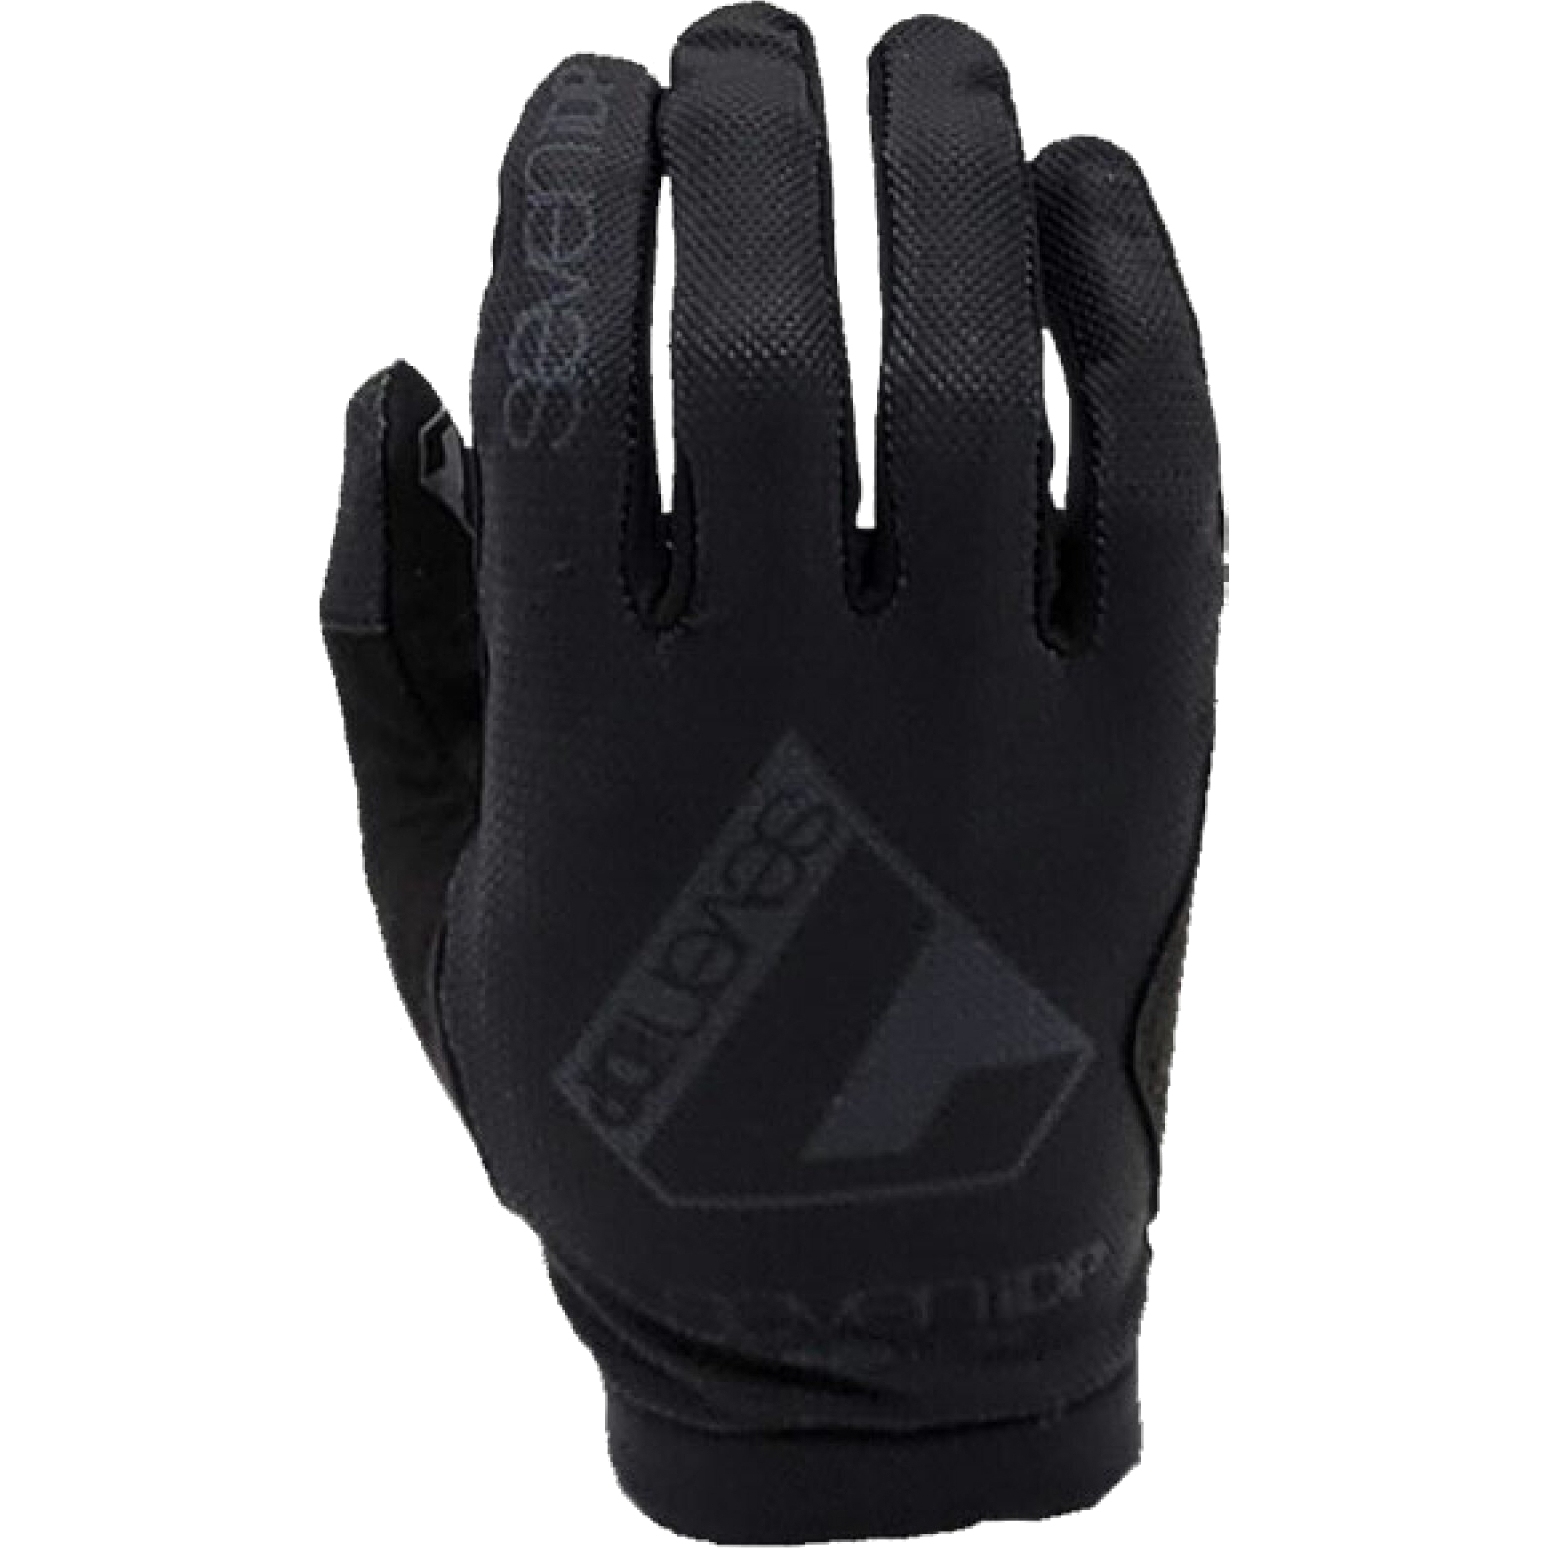 Productfoto van 7 Protection 7iDP Transition Handschoenen - zwart